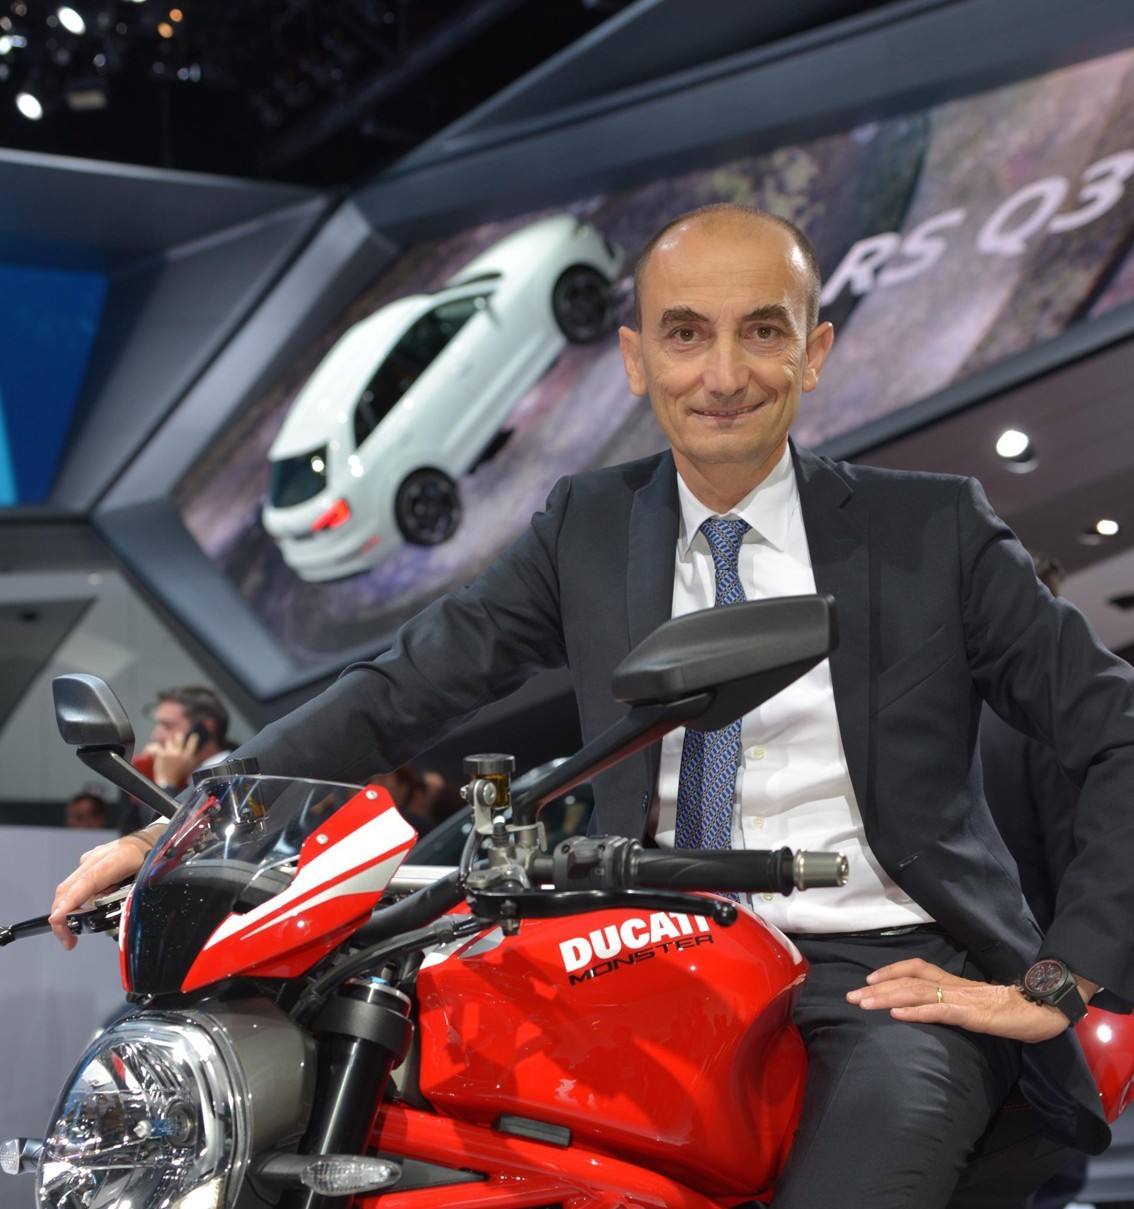 Ducati CEO Claudio Domenicali astride the 2016 Monster 1200 R